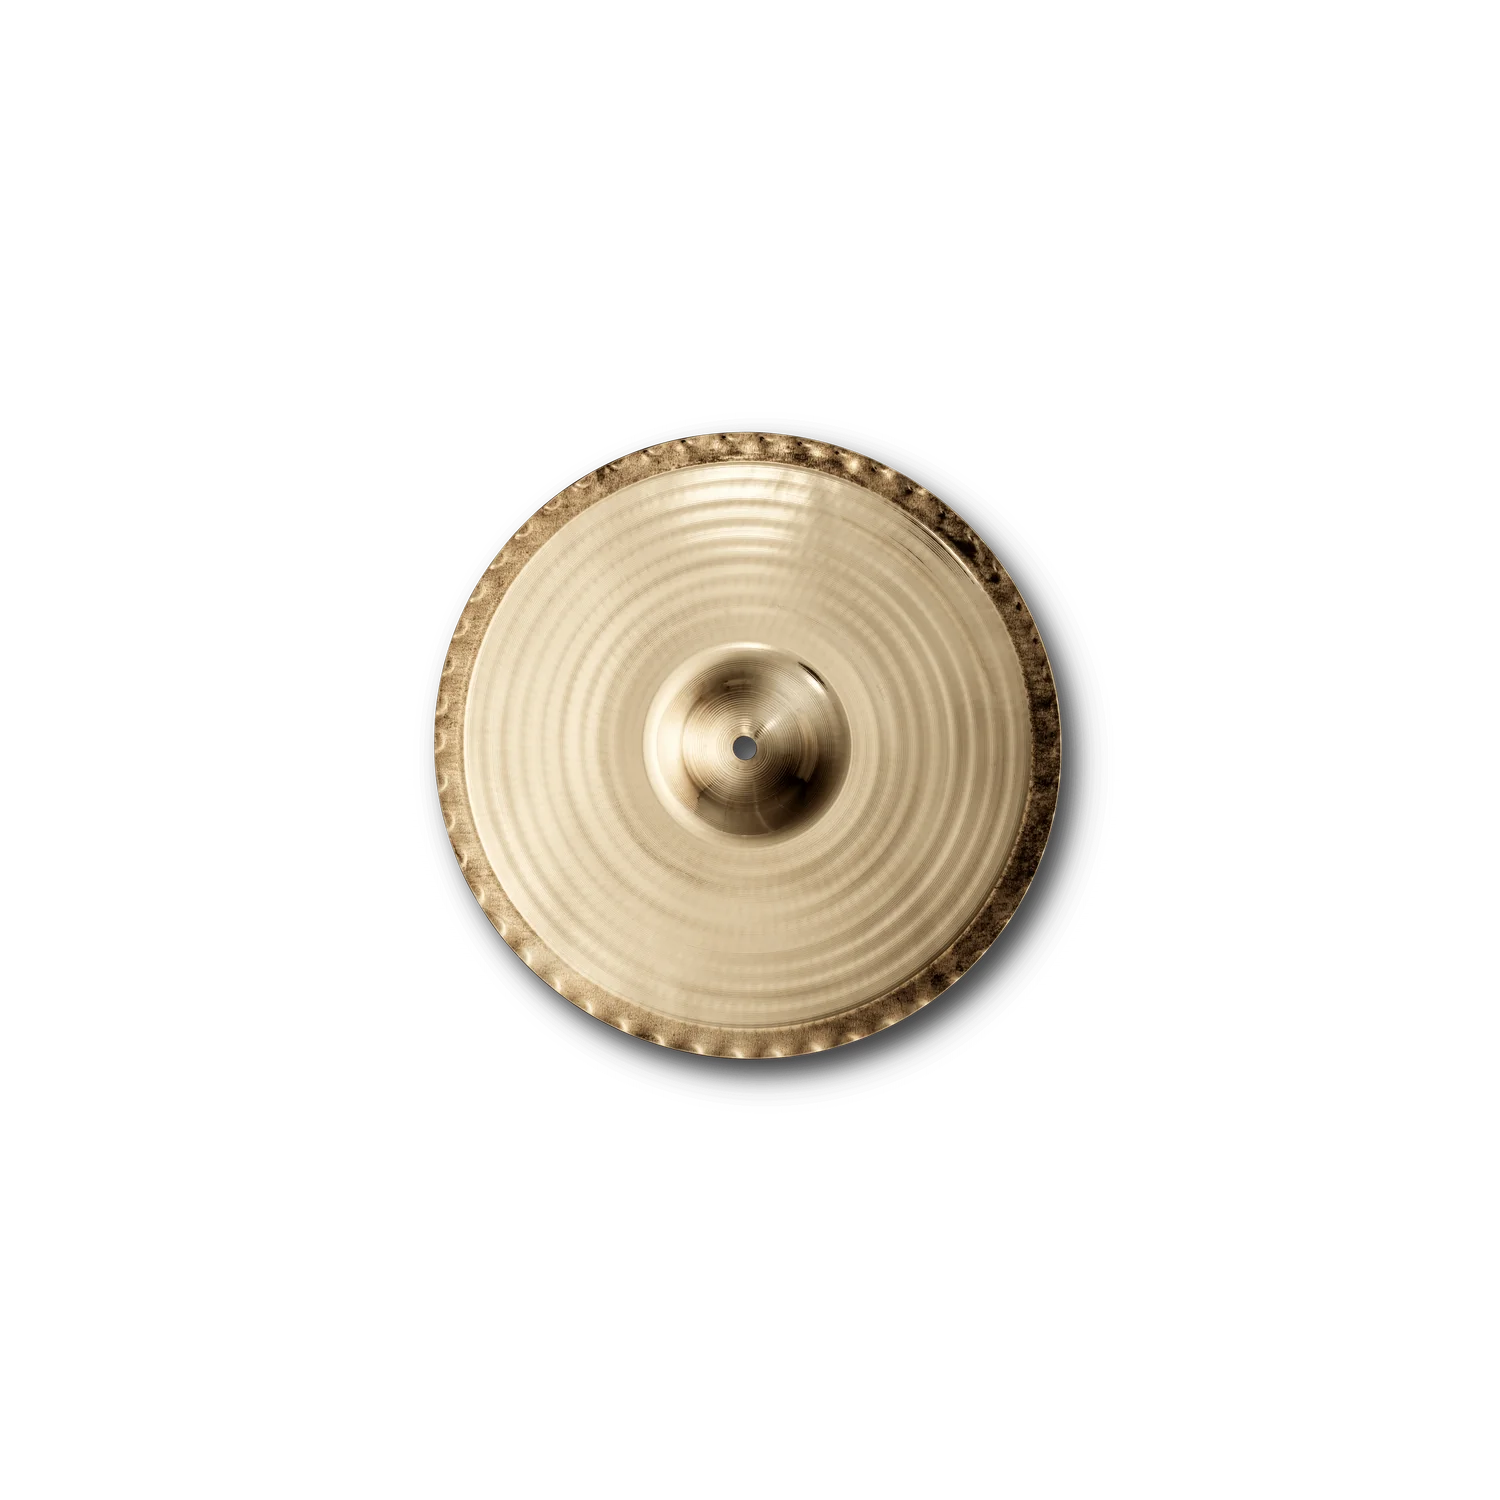 Cymbal Zildjian A Family - A Custom Mastersound HiHats - A20552 - Bottom Cymbal - Việt Music